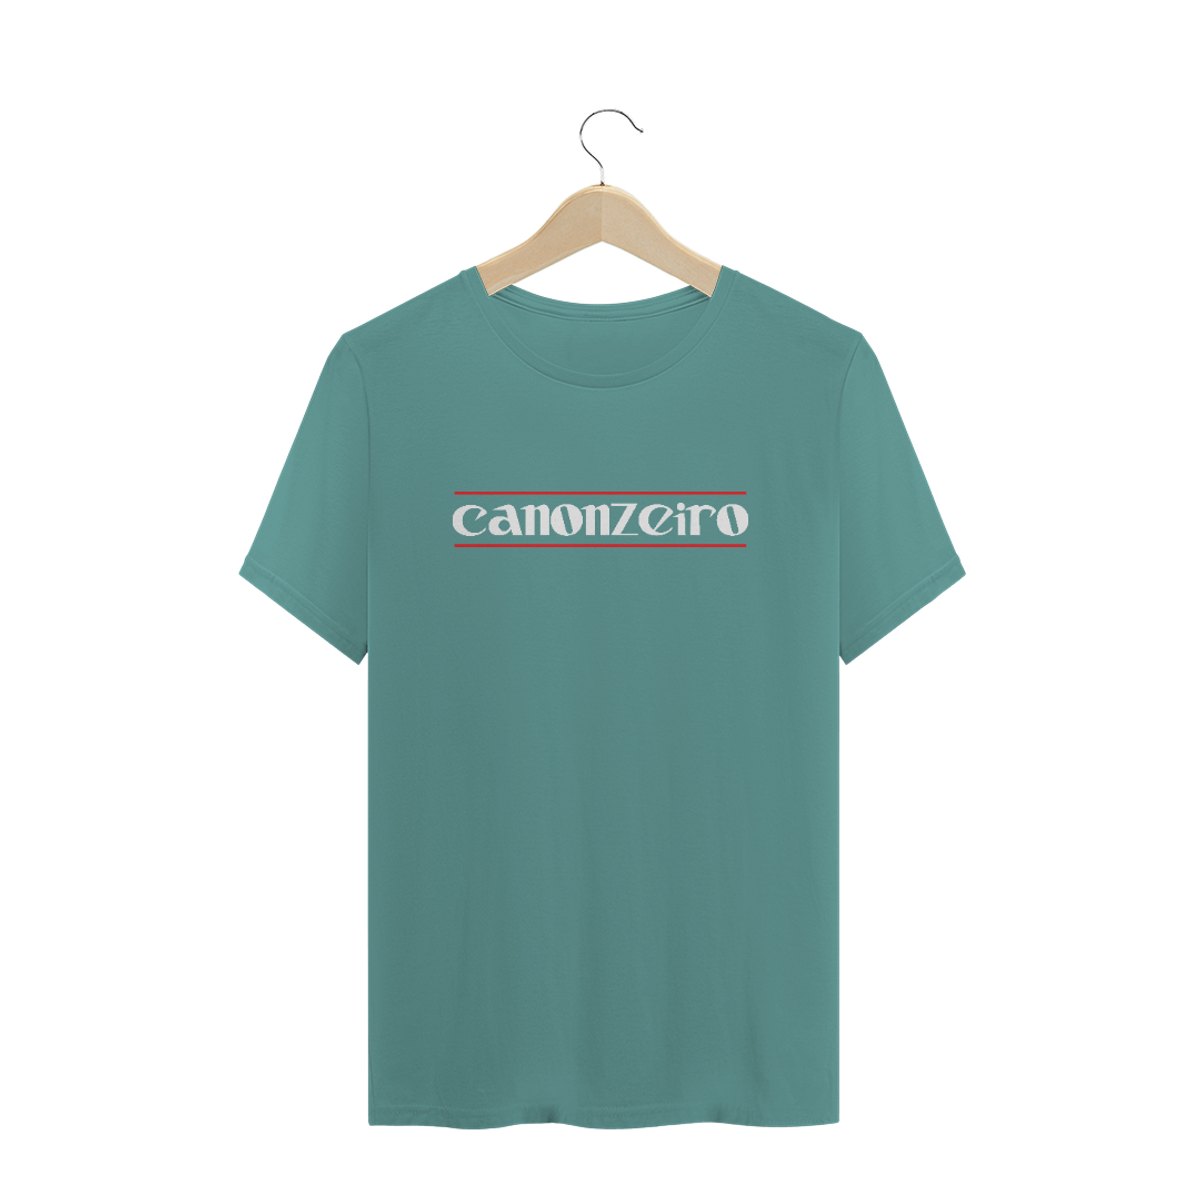 Nome do produto: Camiseta estonada - CANONZEIRO